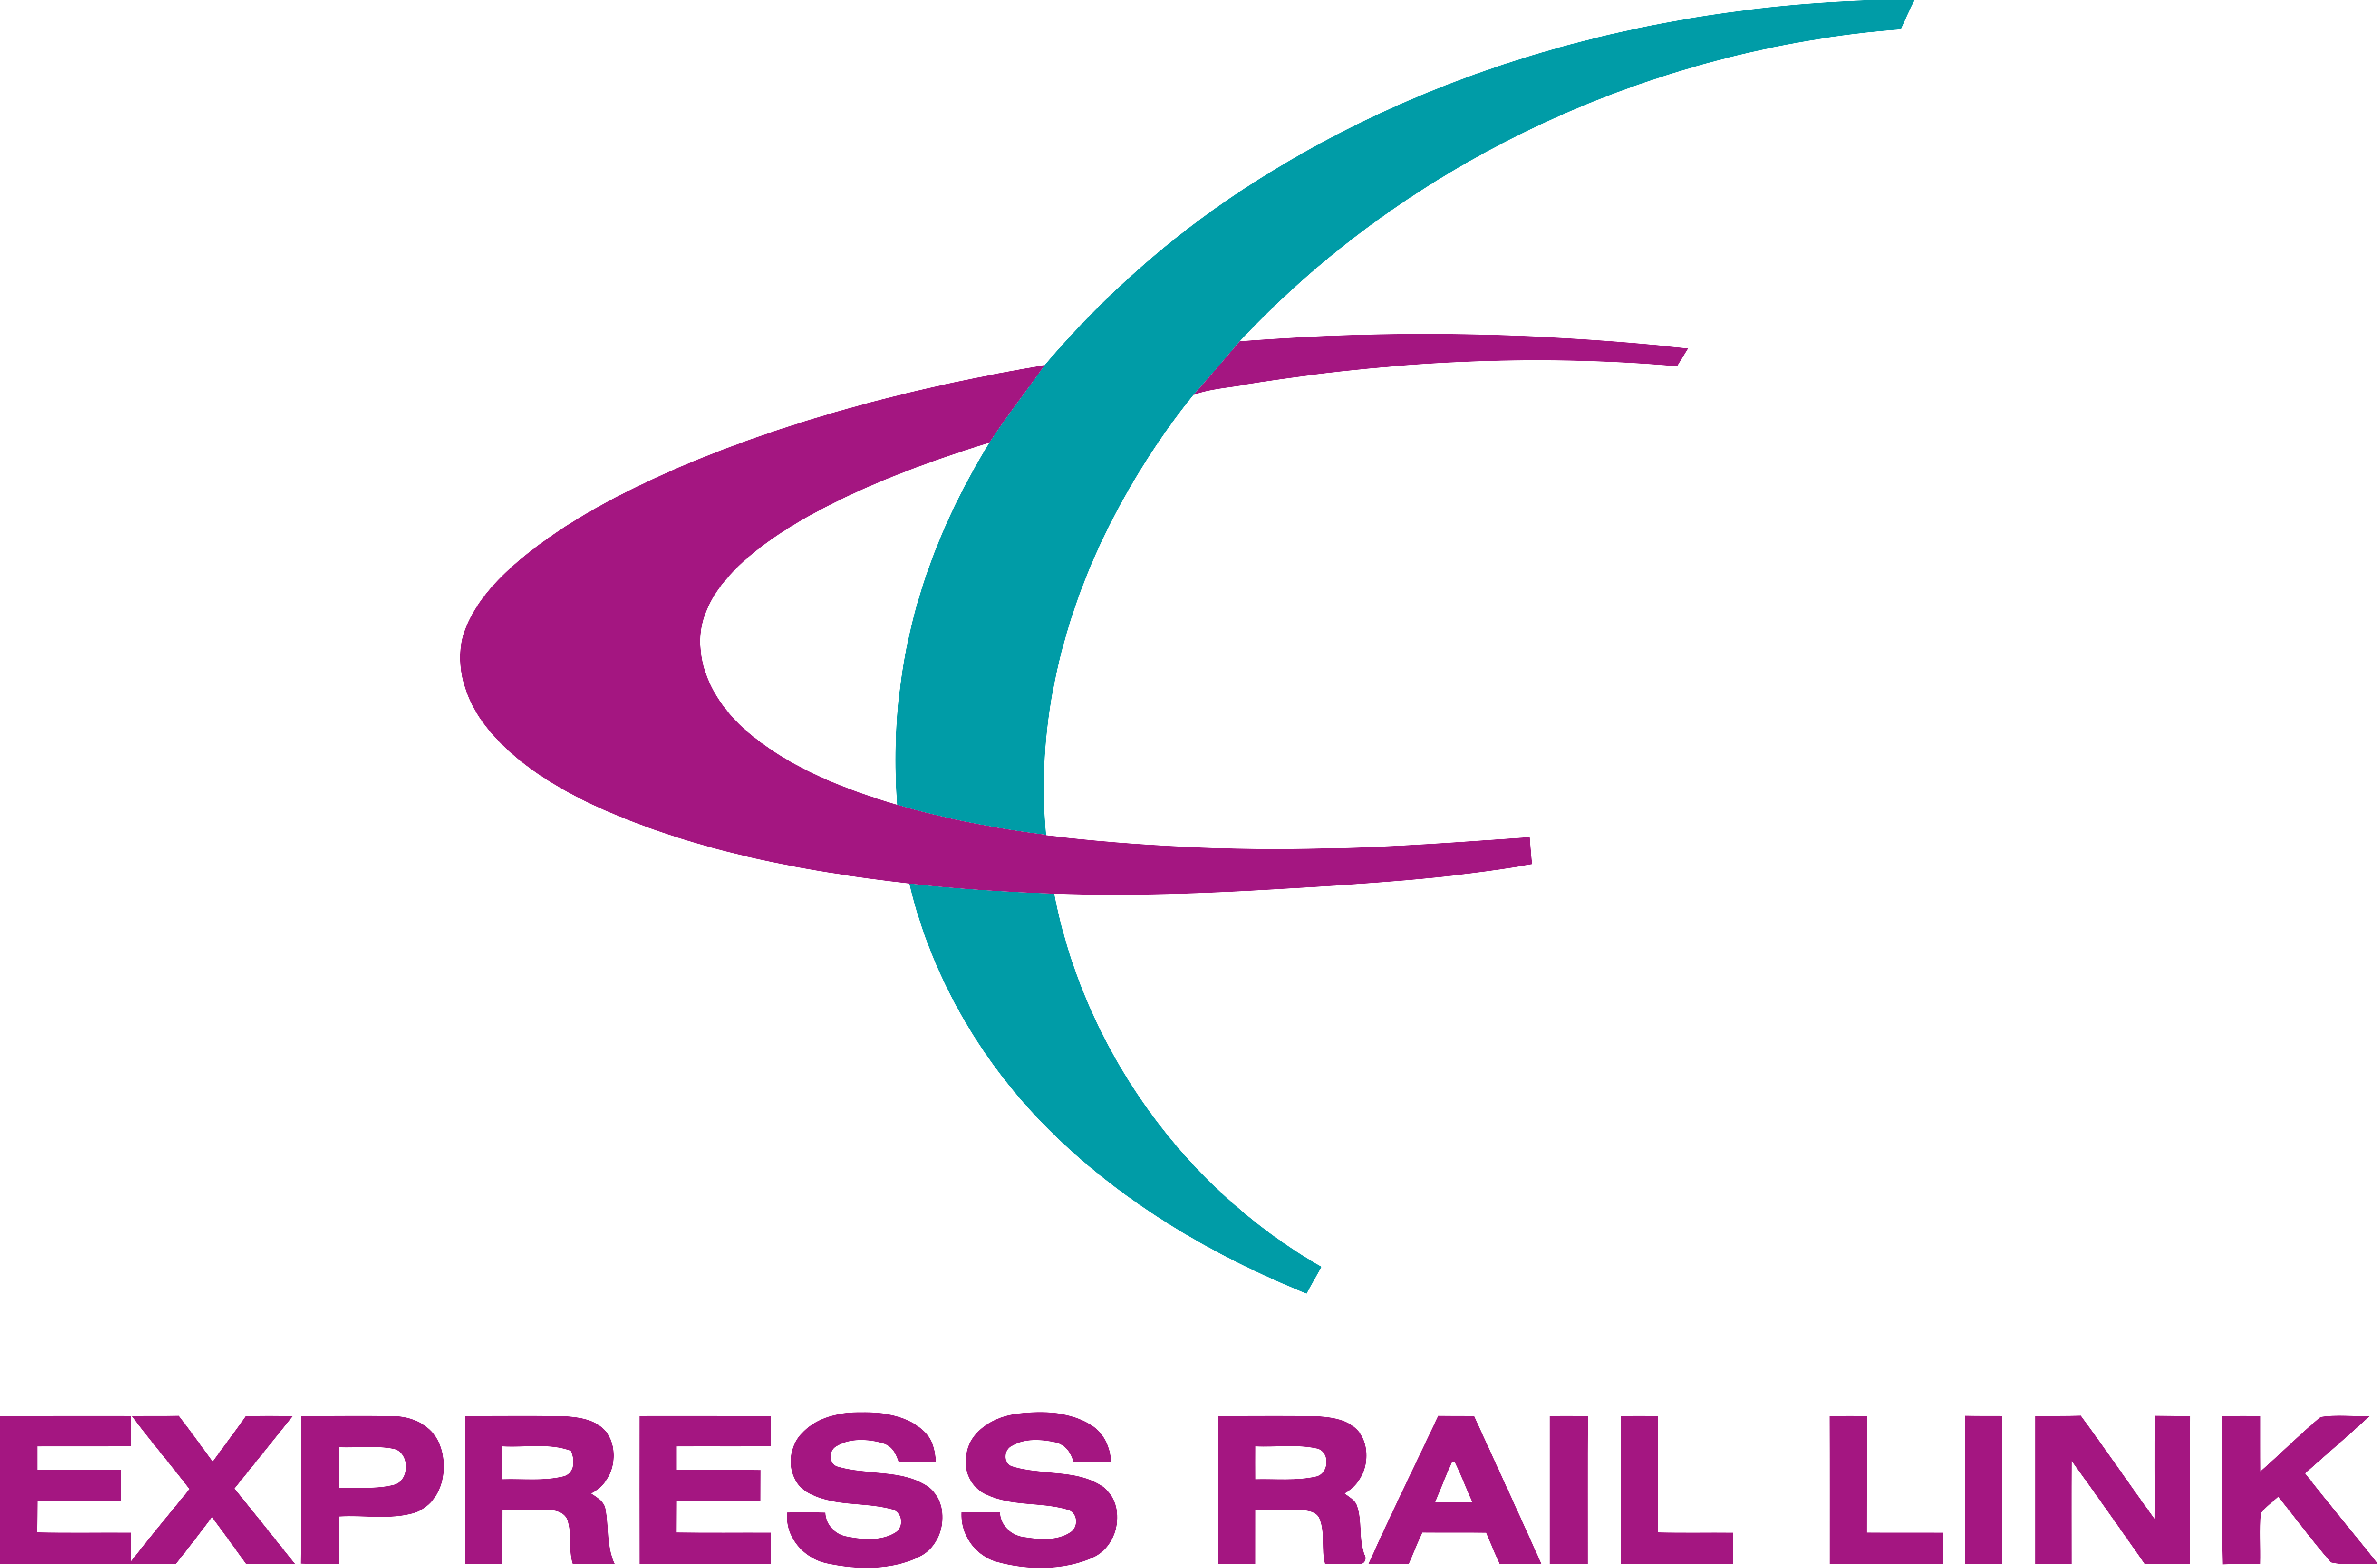 Express Rail Link – Logos Download